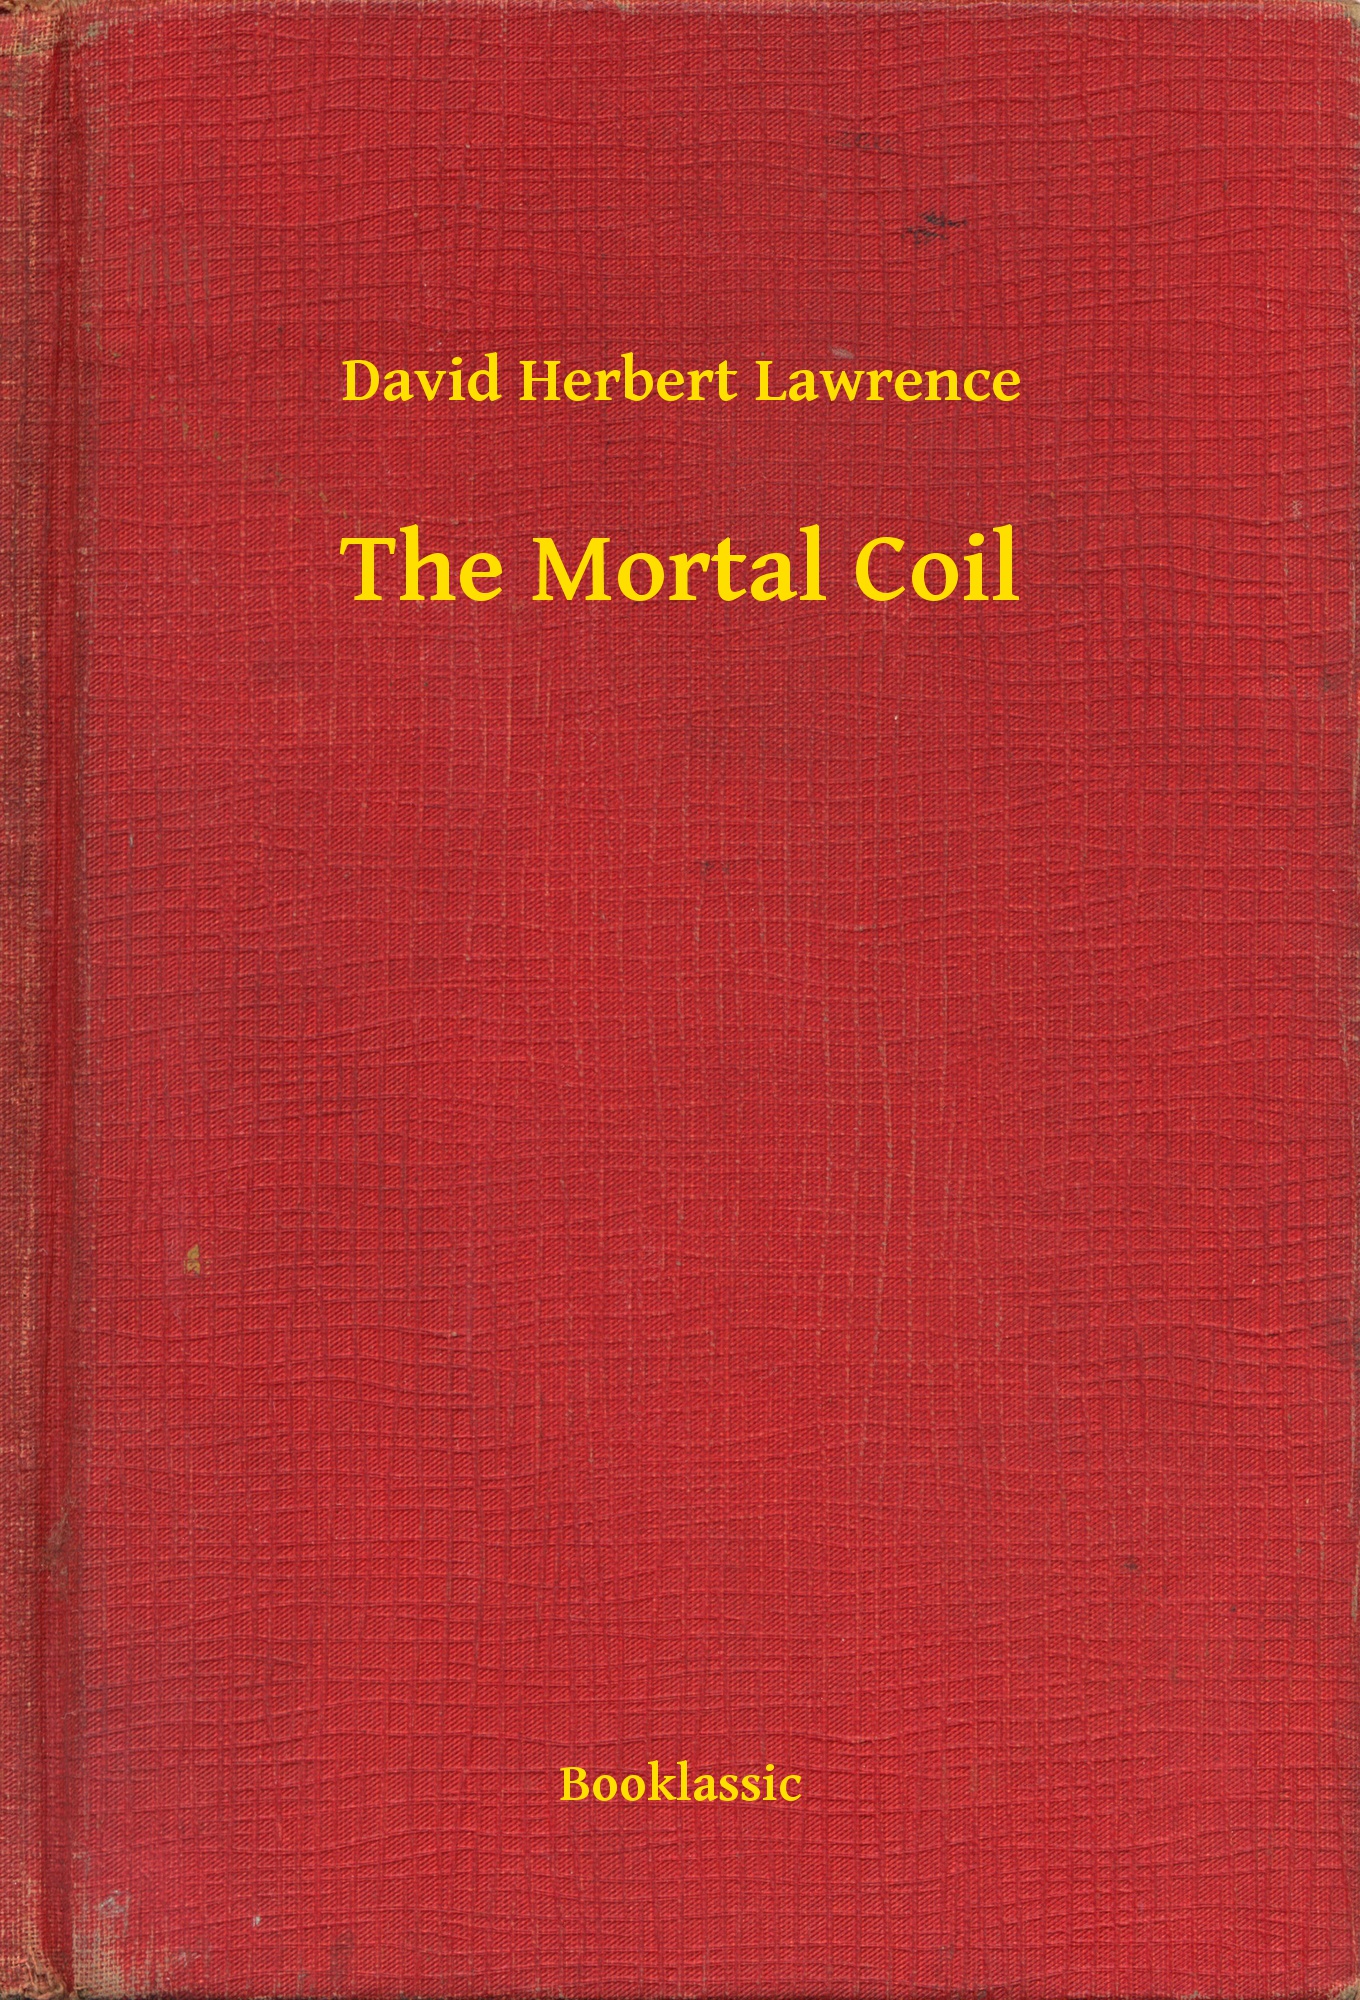 The Mortal Coil